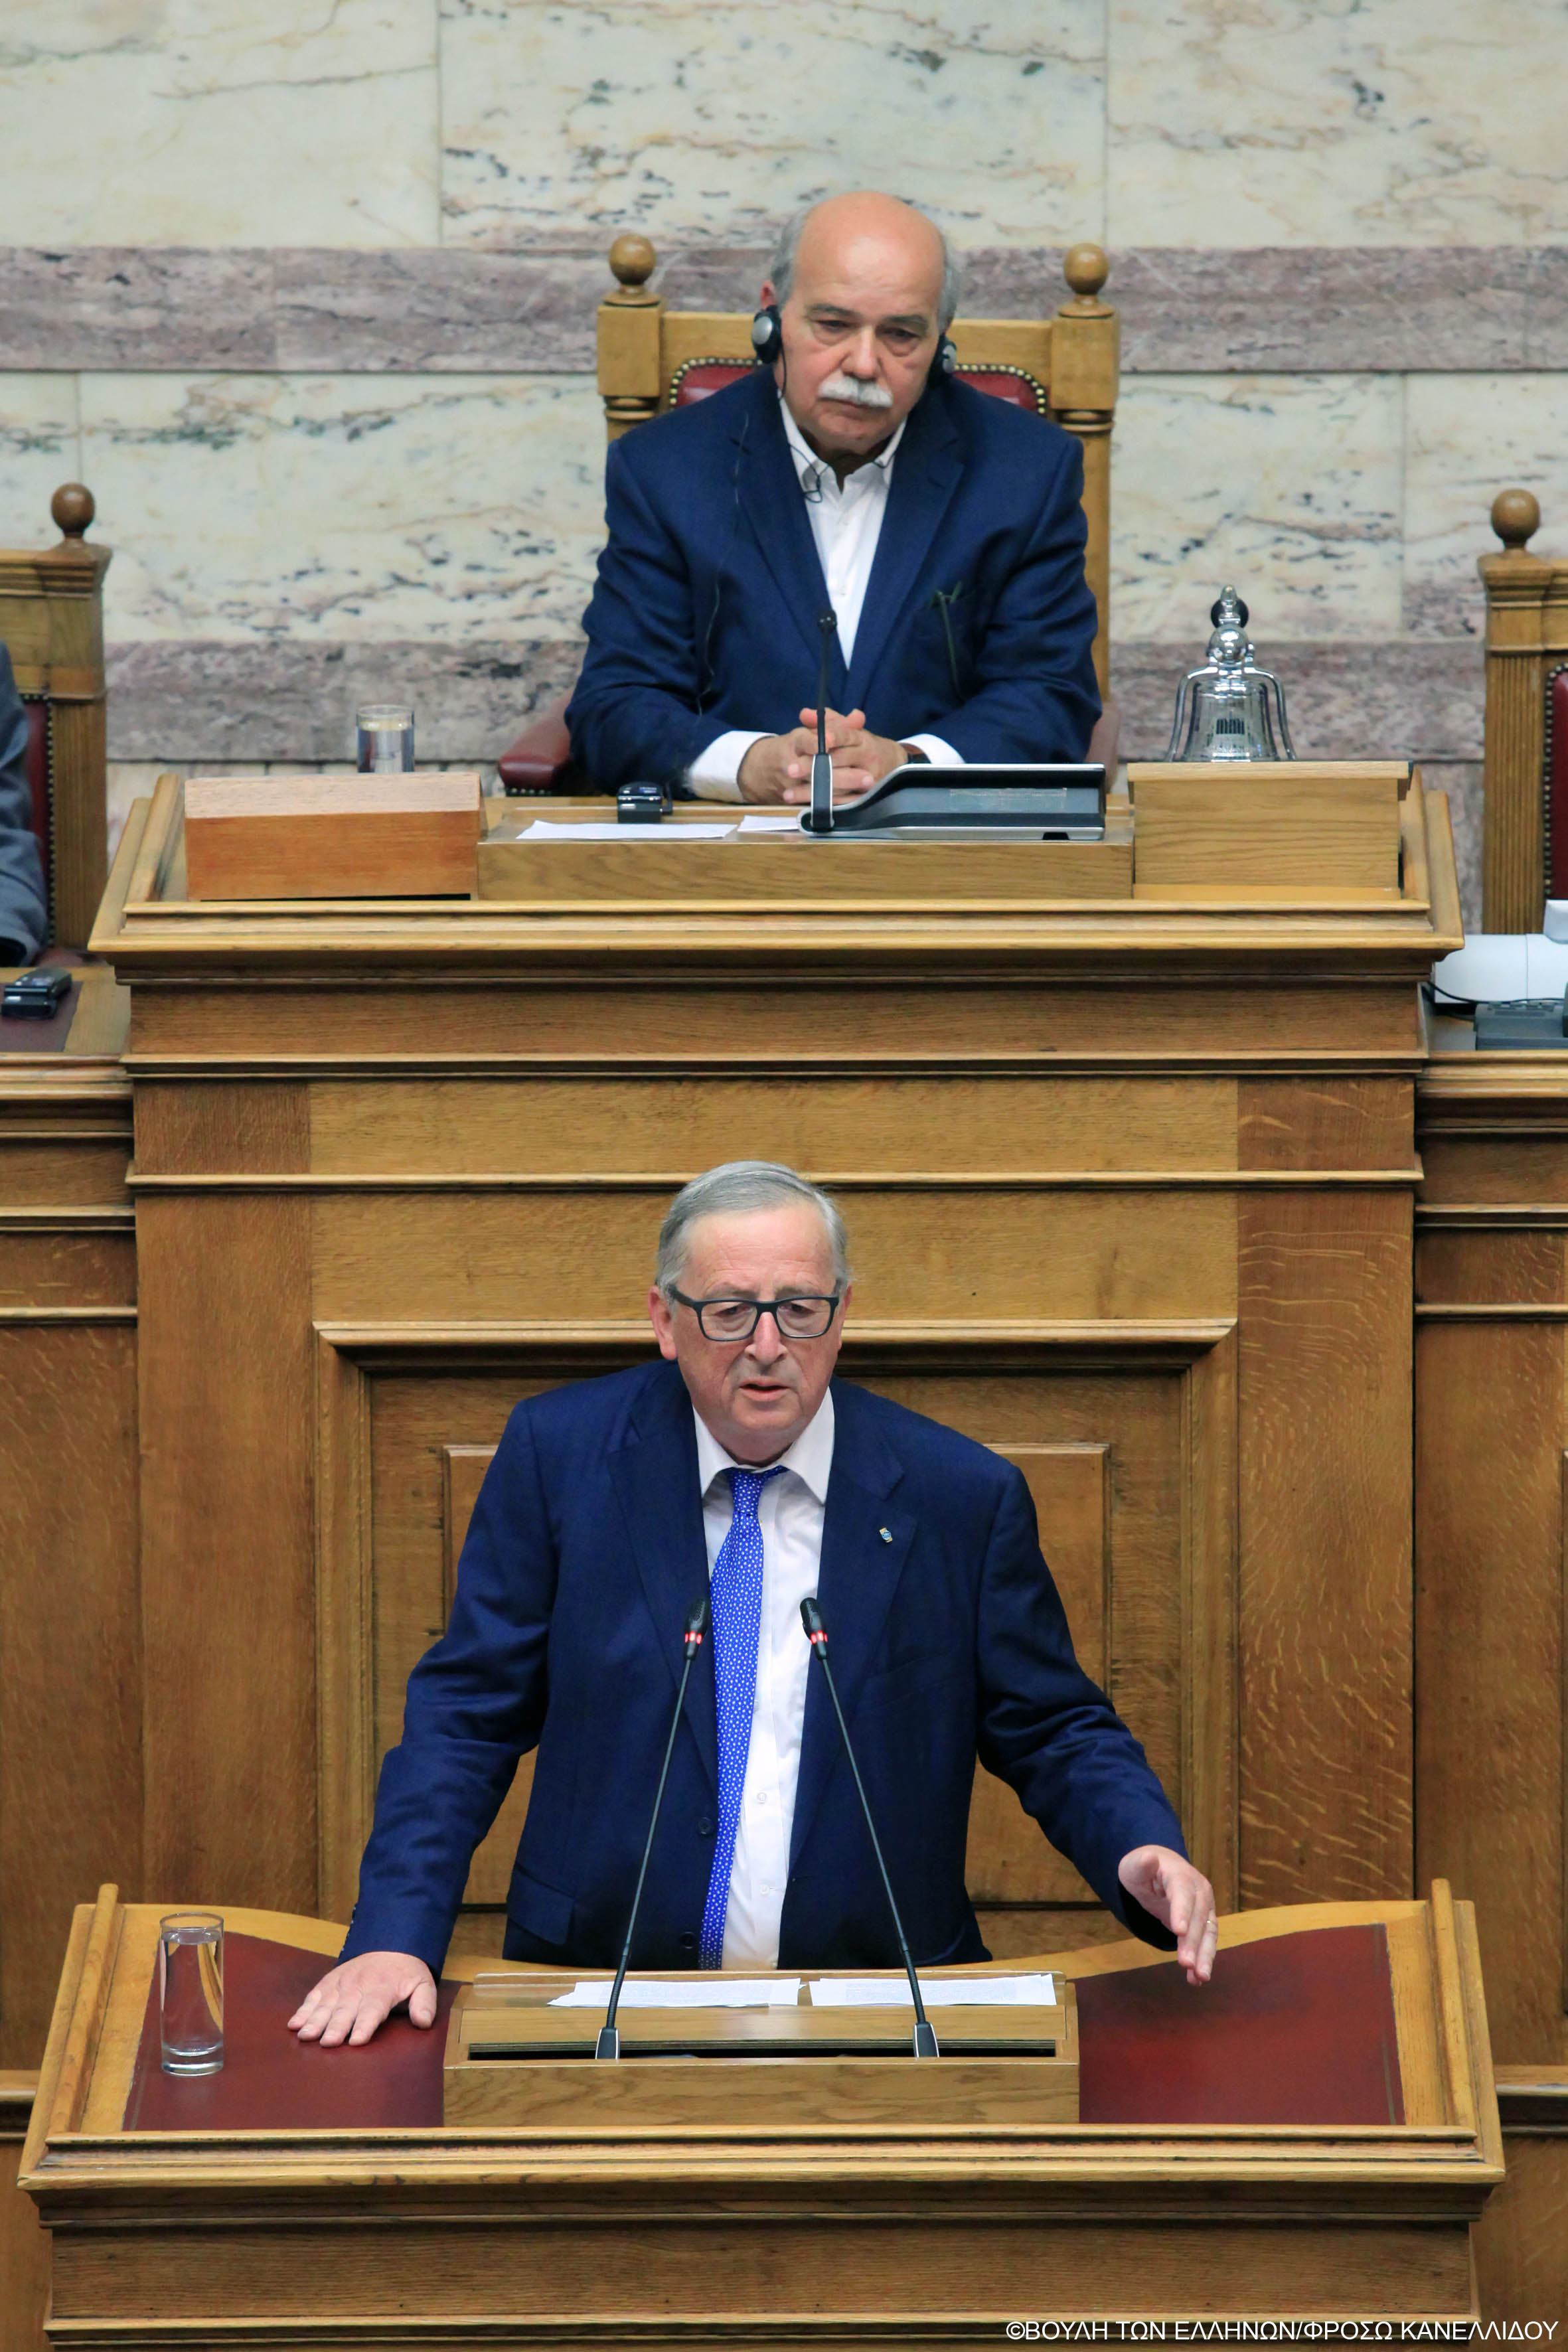  Ο Πρόεδρος της Βουλής κ.Νικόλαος Βούτσης και ο Πρόεδρος της Ευρωπαϊκής Επιτροπής Jean-Claude Juncker